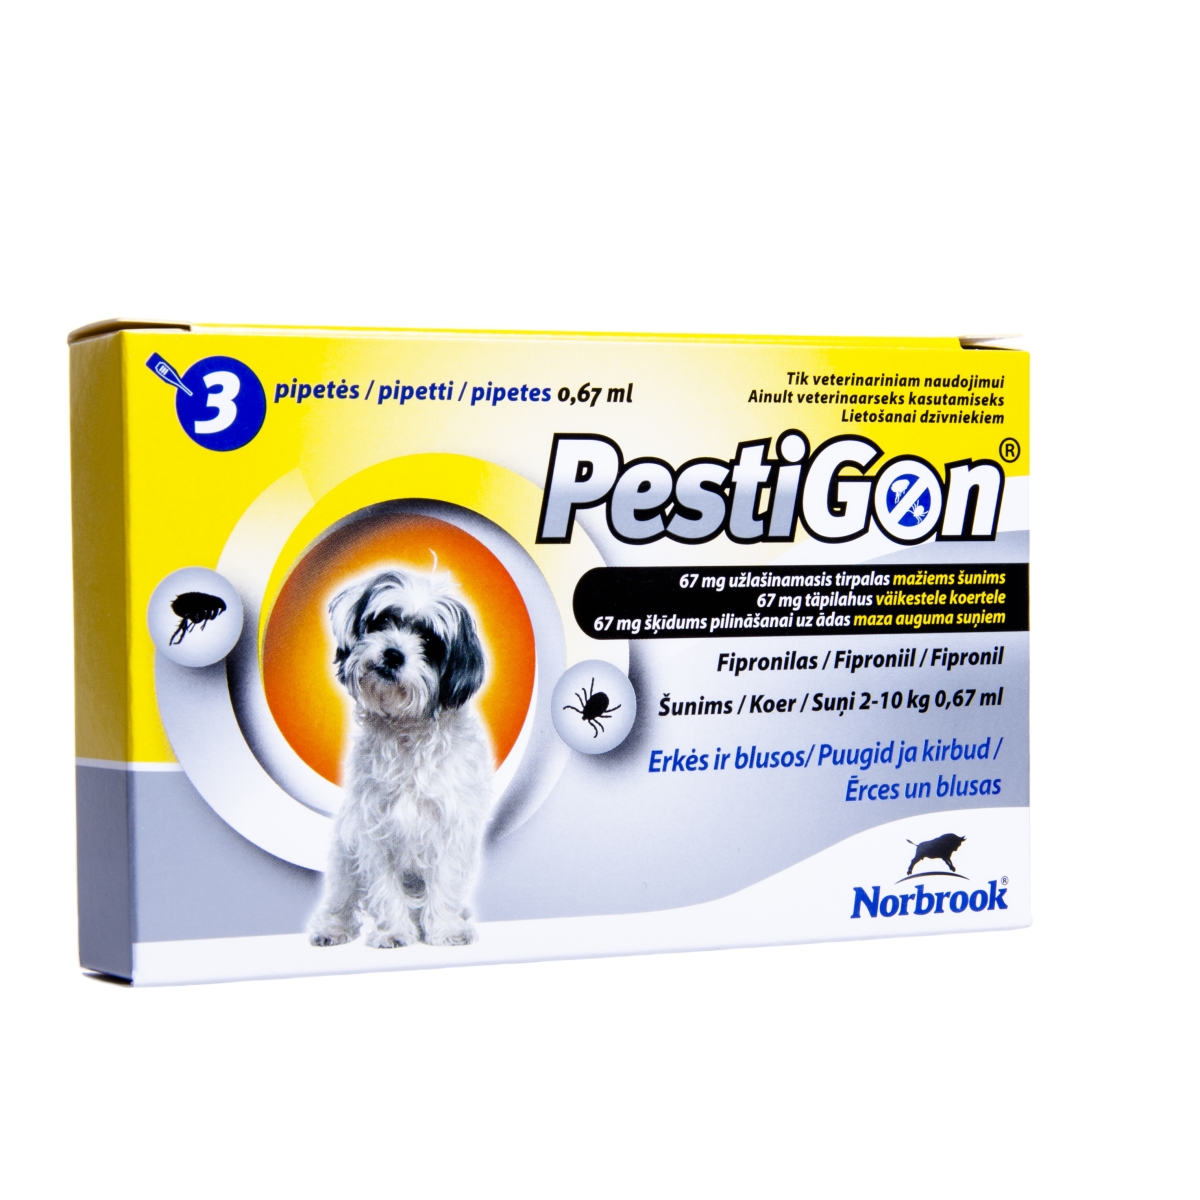 Pestigon šķīdums pret blusām un ērcēm suņiem 2-10kg  3gab